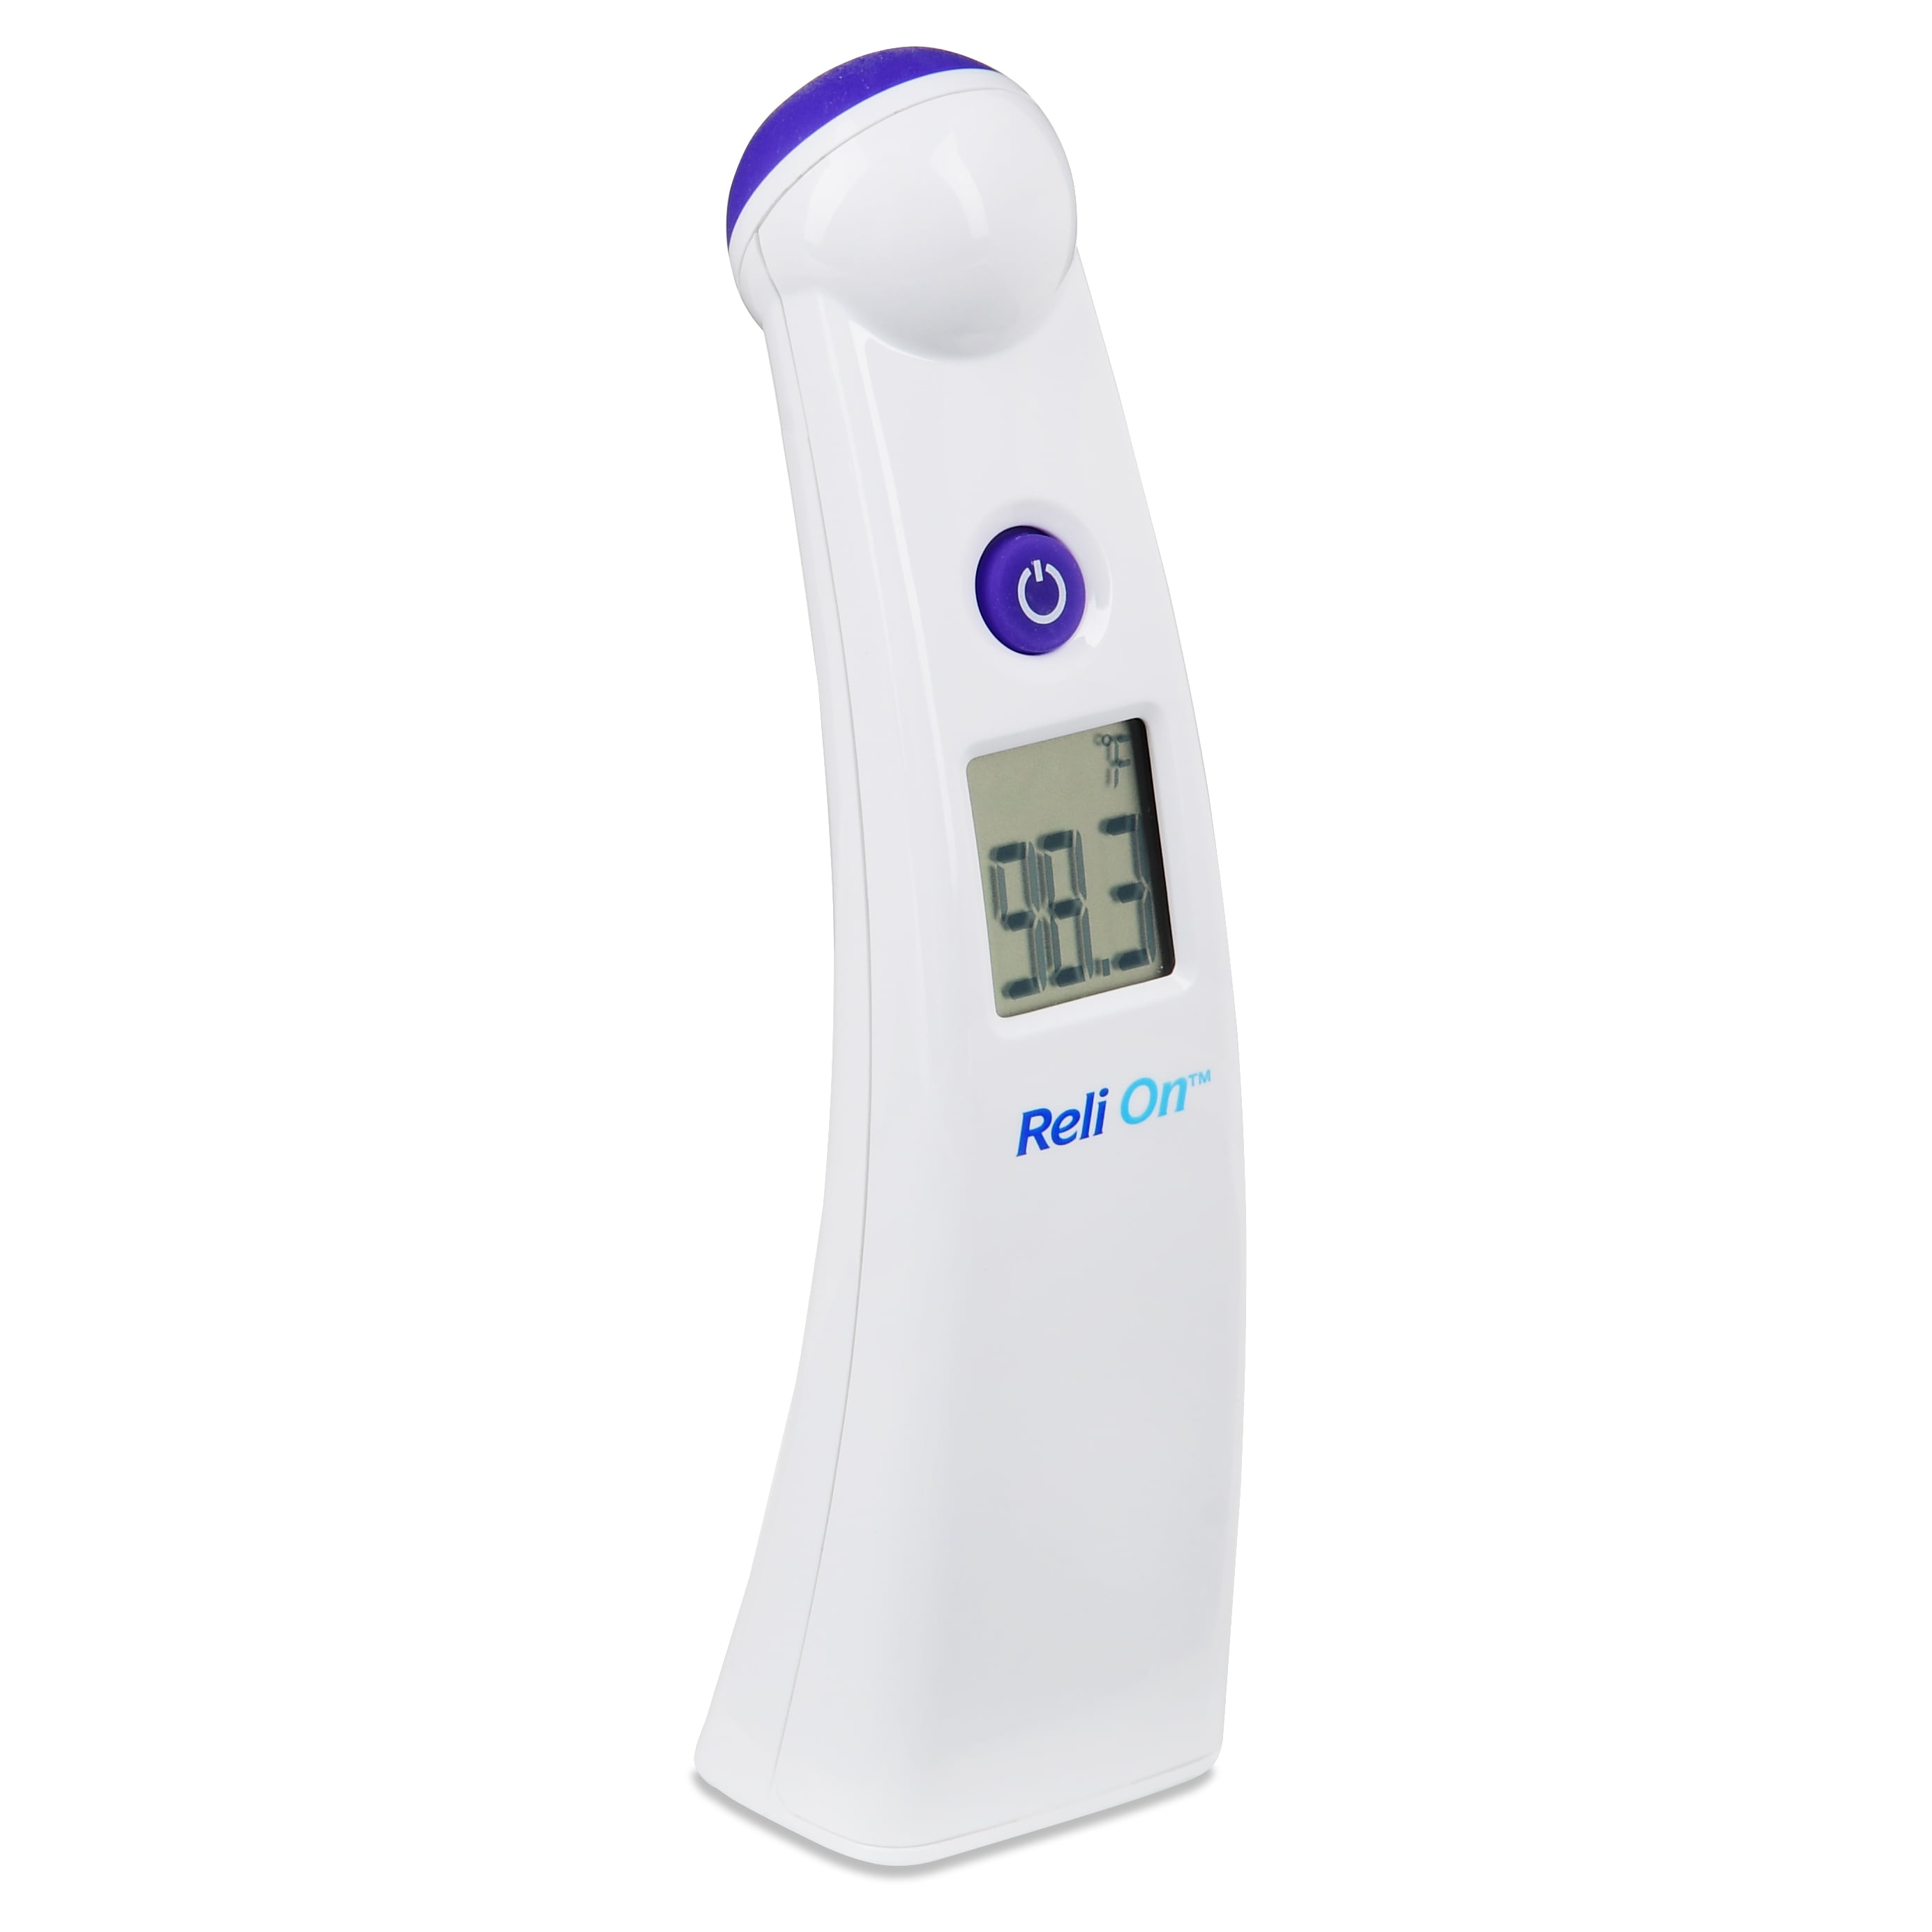 ReliOn 2 Second Digital Thermometer - Walmart.com - Walmart.com